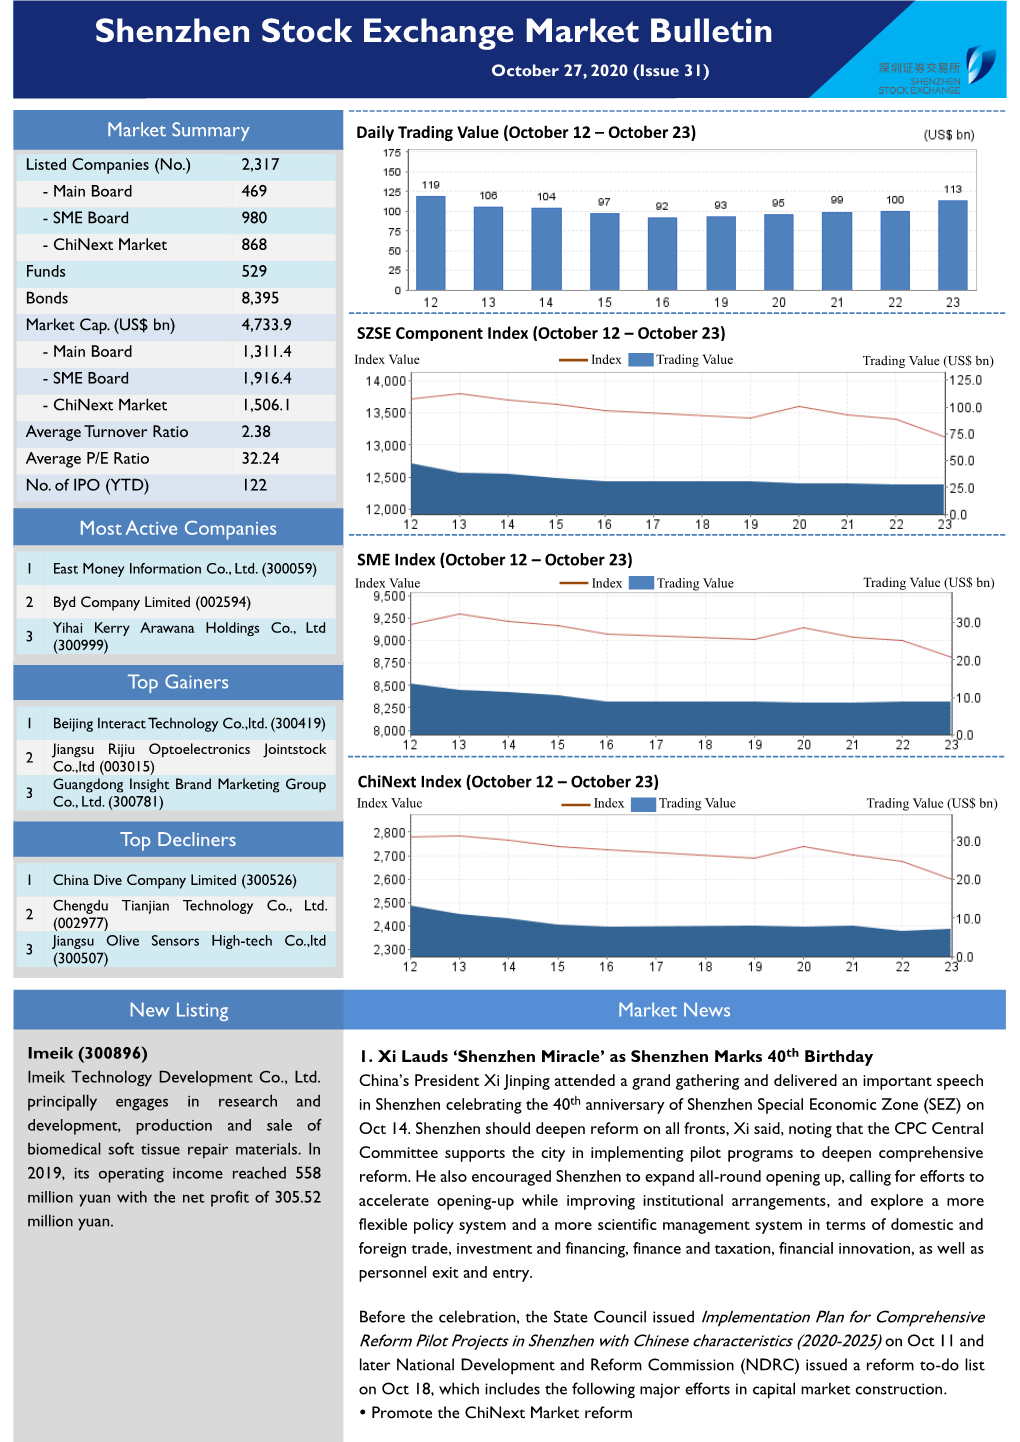 Shenzhen Stock Exchange Market Bulletin October 27, 2020 (Issue 31)